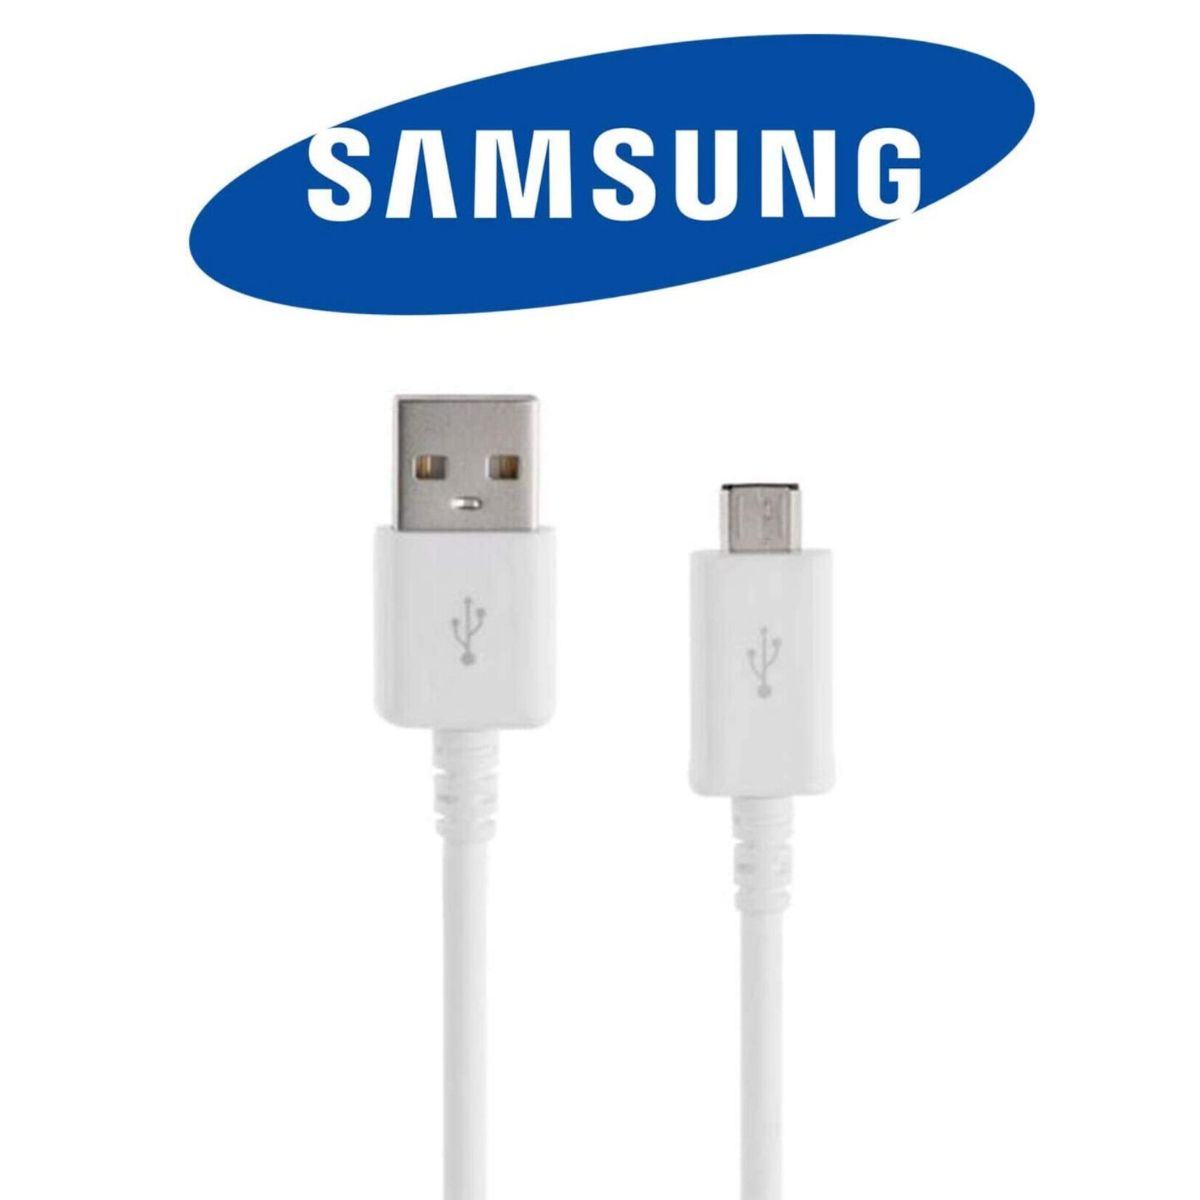 SAMSUNG Original Samsung Schnell Ladekabel USB Galaxy S6 Micro 1m Datenkabel S5 Handy-Ladekabel S7